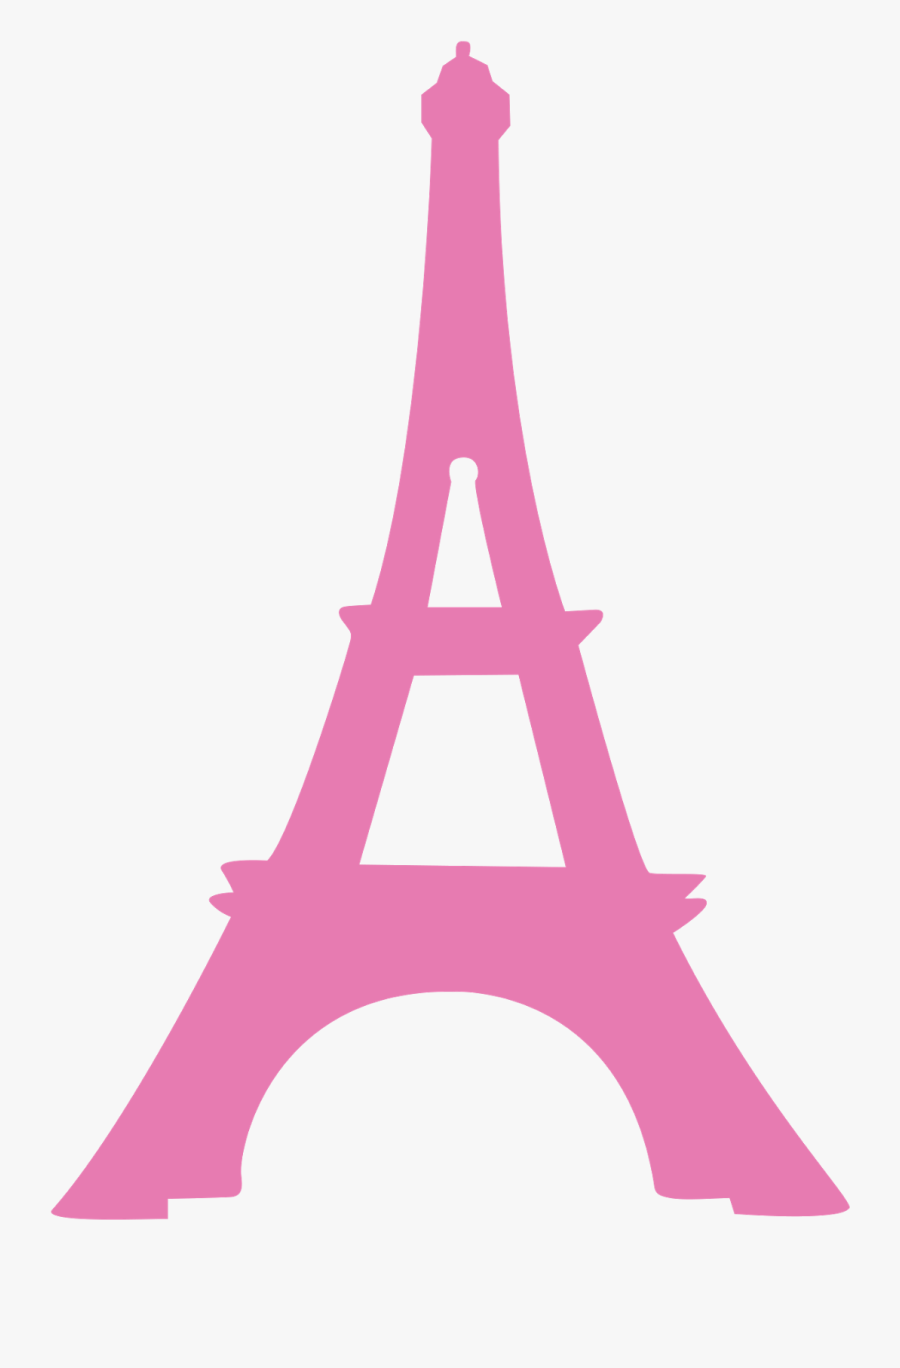 Paris Clipart Paris Poodle - Torre Eiffel Dibujo Png, Transparent Clipart